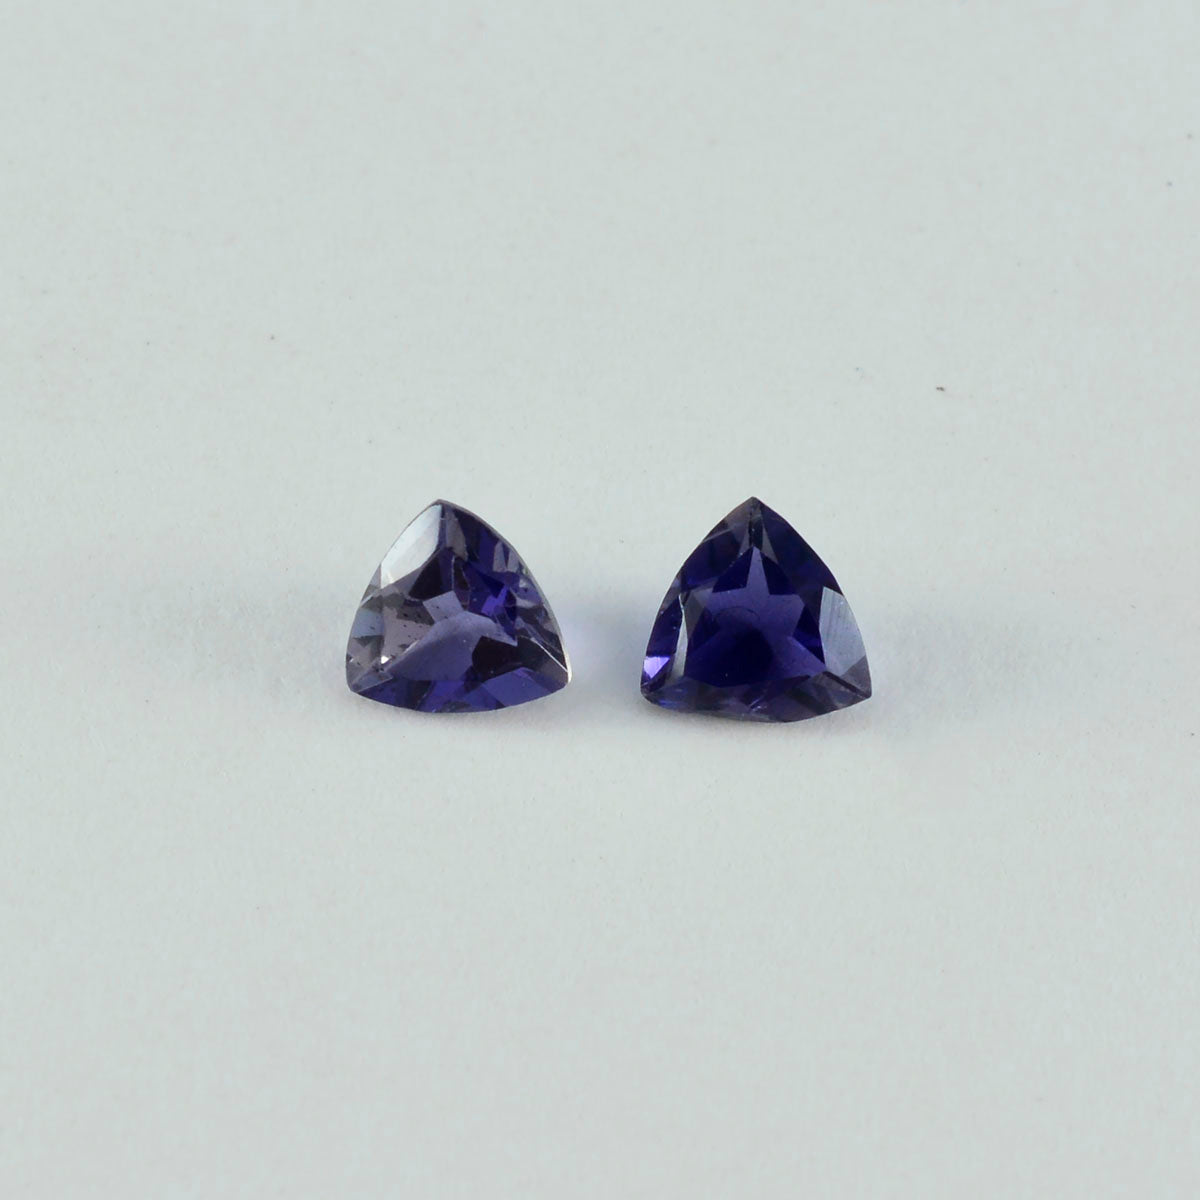 riyogems 1шт синий иолит ограненный 11x11 мм драгоценный камень в форме триллиона отличное качество